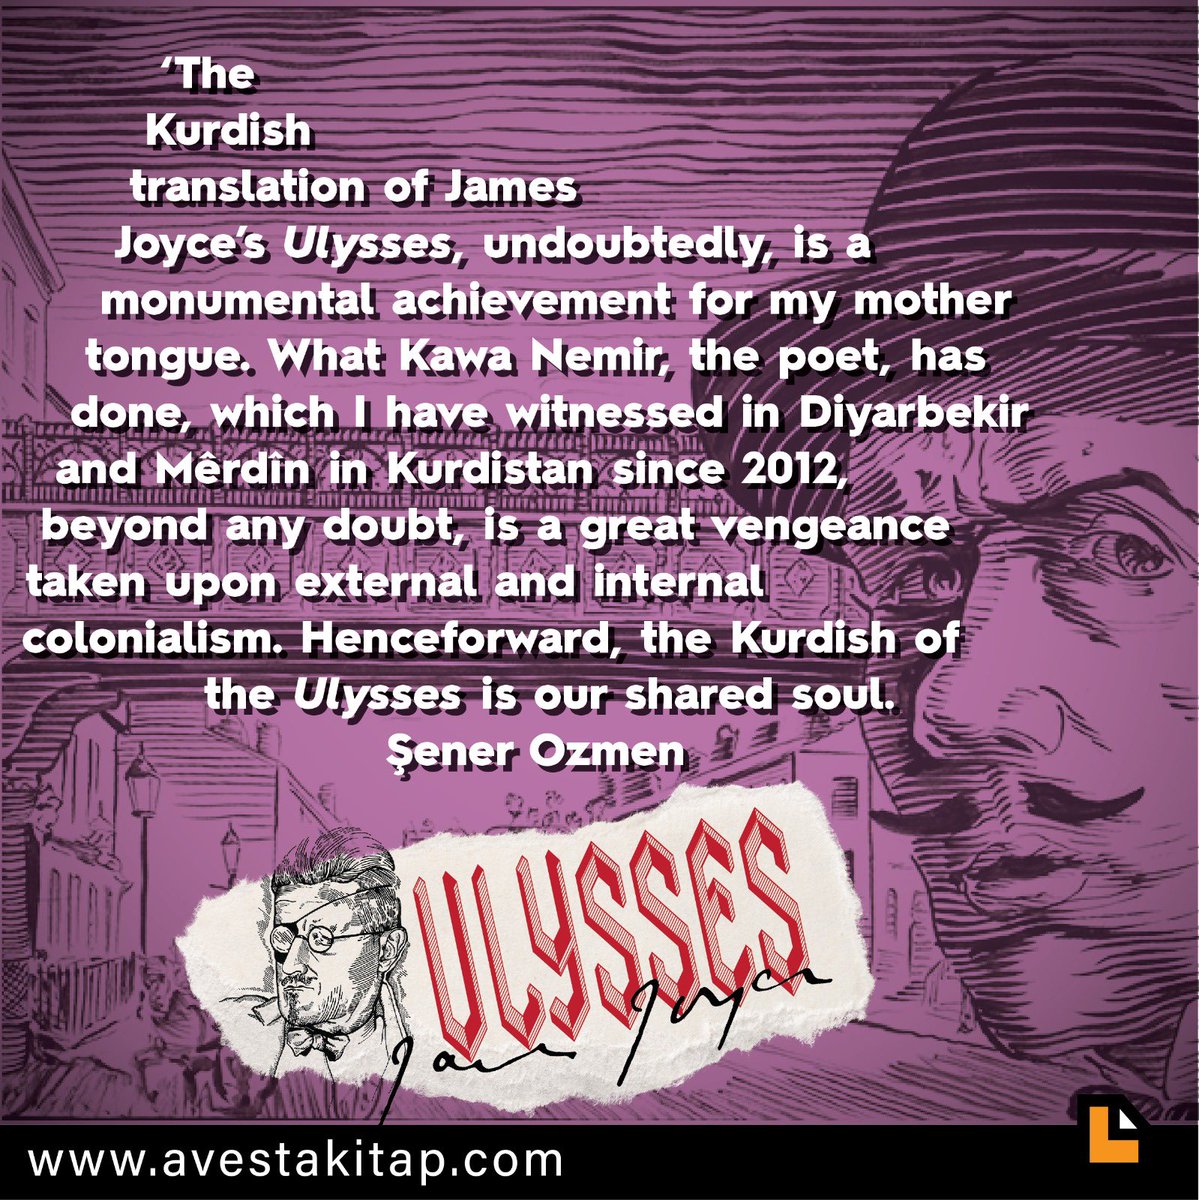 “Wergera bi kurdî ya Ulyssesa James Joyce, der ji şikberiyê, serkeftineke abîdeyî ye bo zimanê min ê zikmakî. A Kawa Nemirê şa'ir kirî, tolhildaneke gewre ye ku hat hilanîn ji koloniyalîzma zimanî ya dereke û navxweyî. Ji niha û pê de, kurdiya Ulyssesê giyanê me ye.” Şener Ozmen